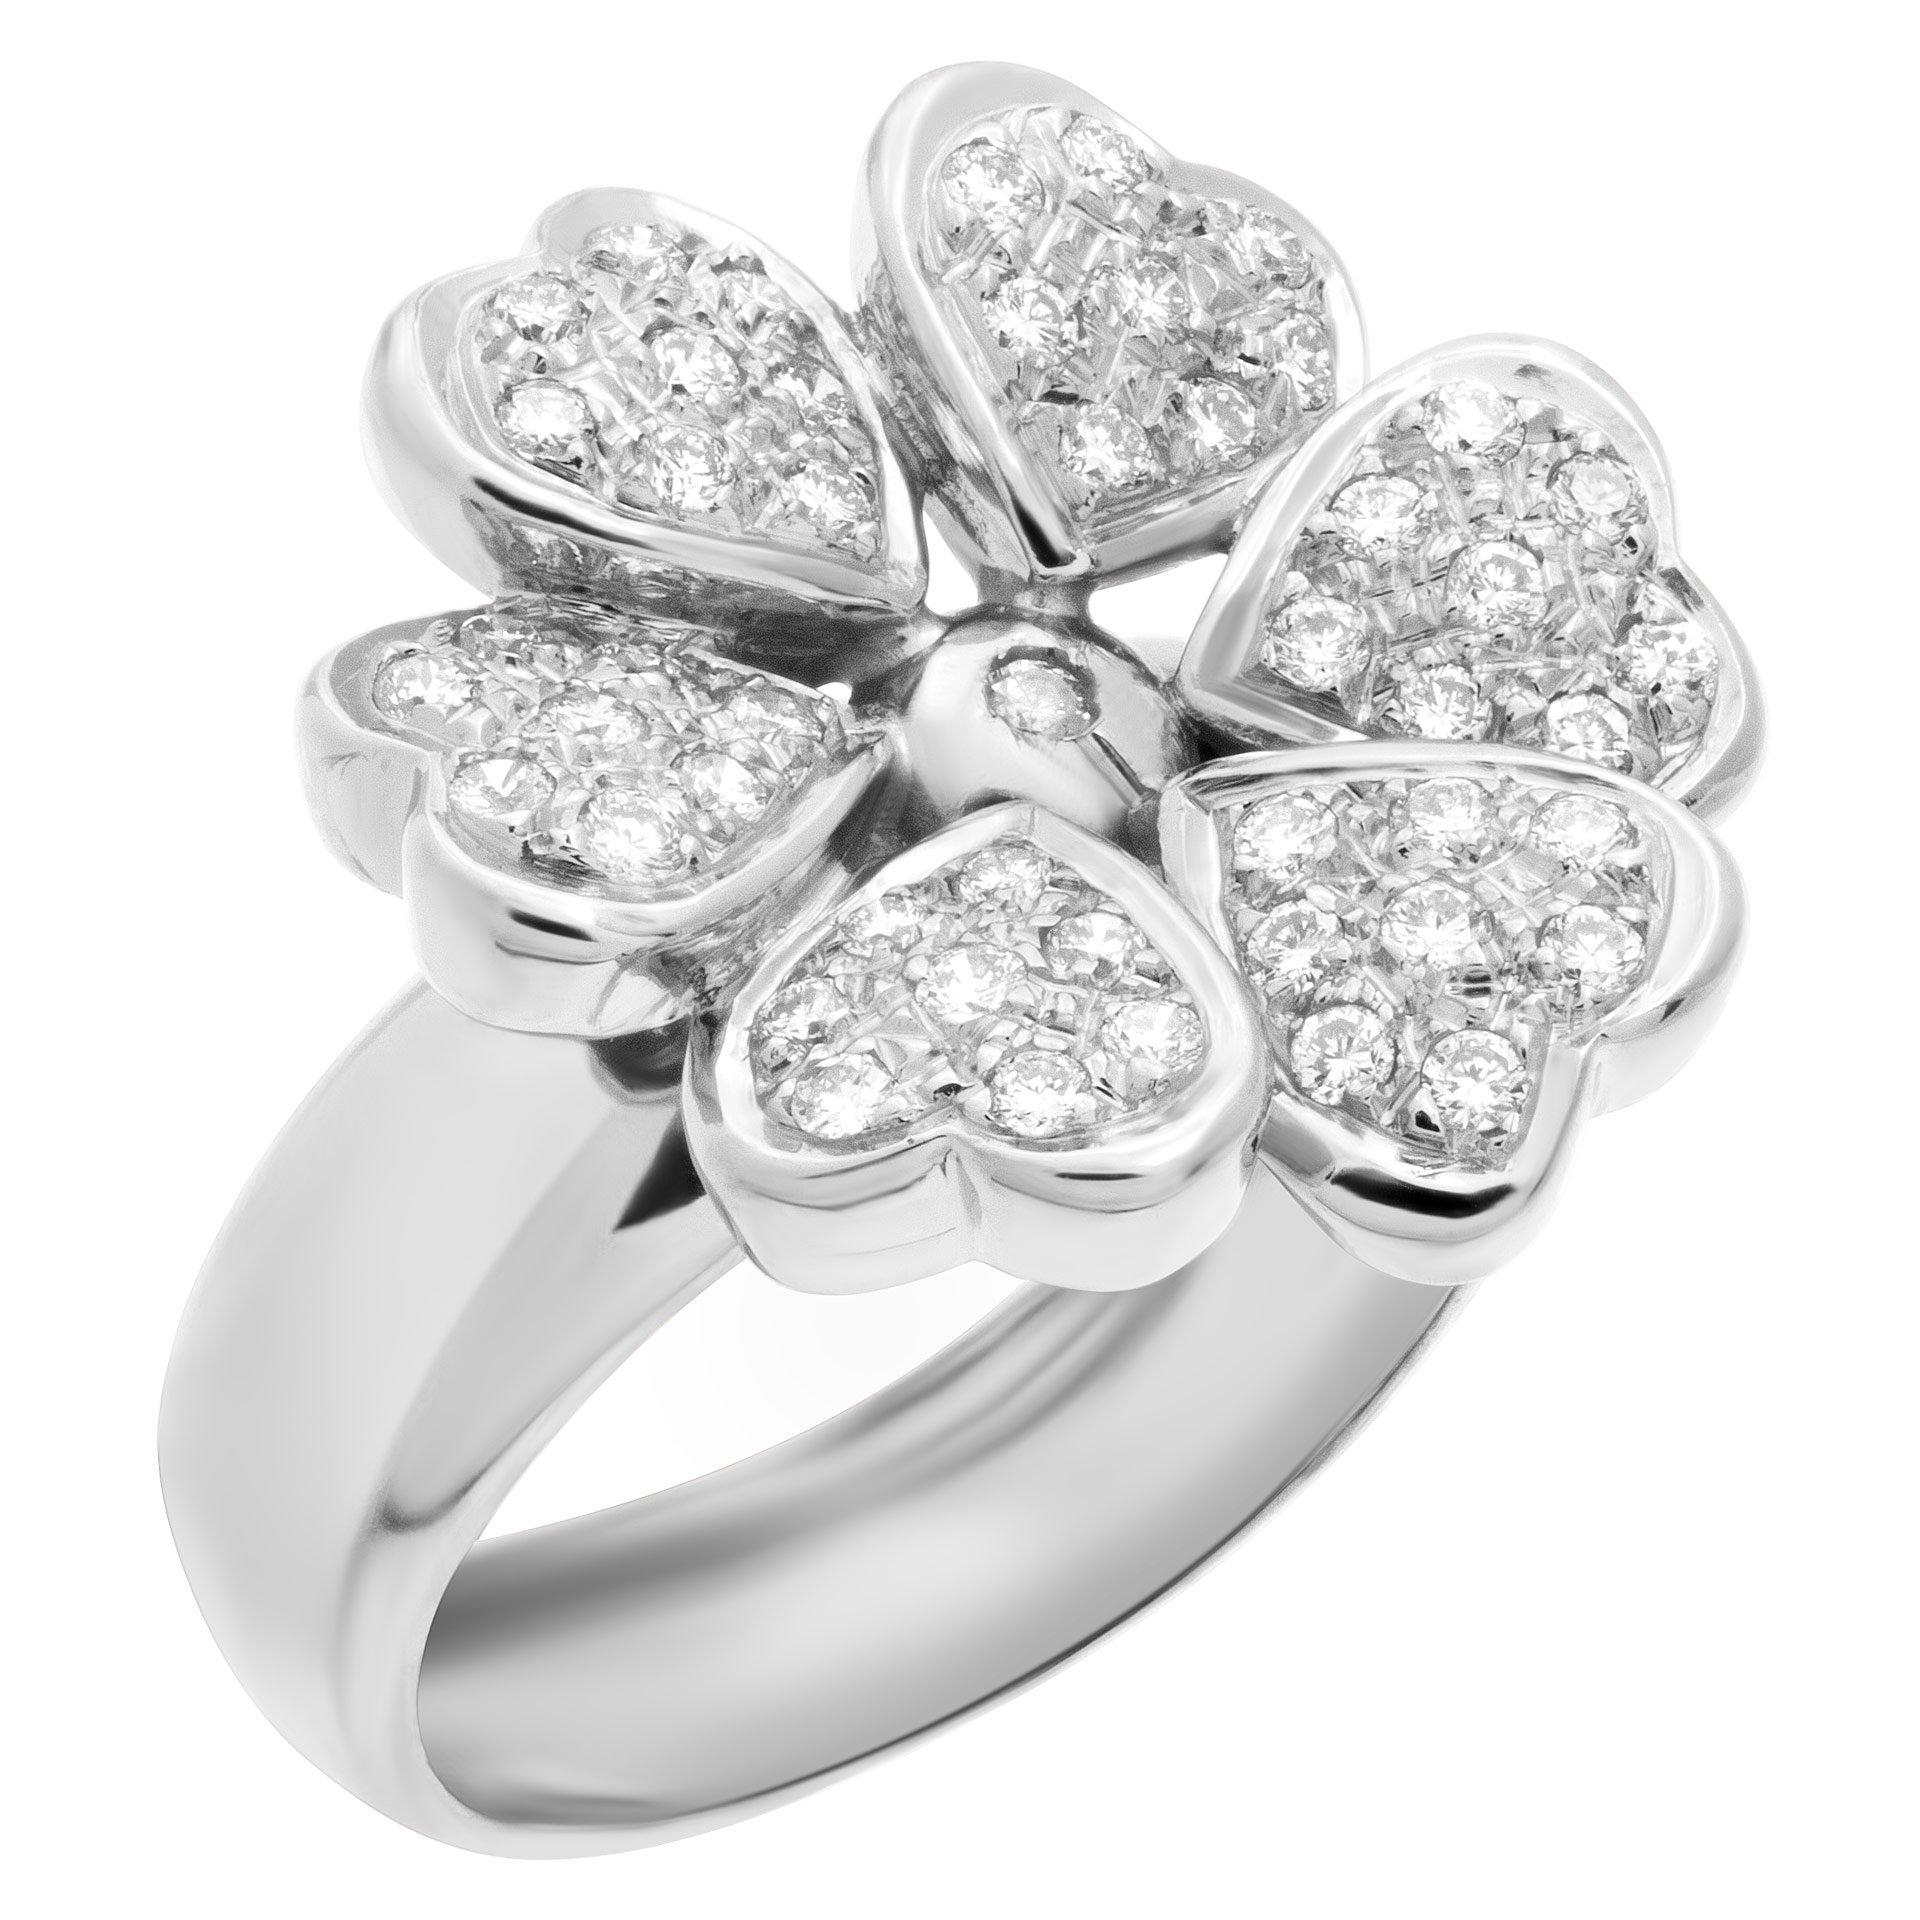 Diamond Flower Ring mit 0,60 Karat in G-H Farbe, VS Klarheit Diamanten in 18k Weißgold gefasst. Größe 6.5

Dieser Diamantring hat derzeit die Größe 6,5. Einige Artikel können nach oben oder unten angepasst werden, bitte fragen Sie uns! Er wiegt 6,2